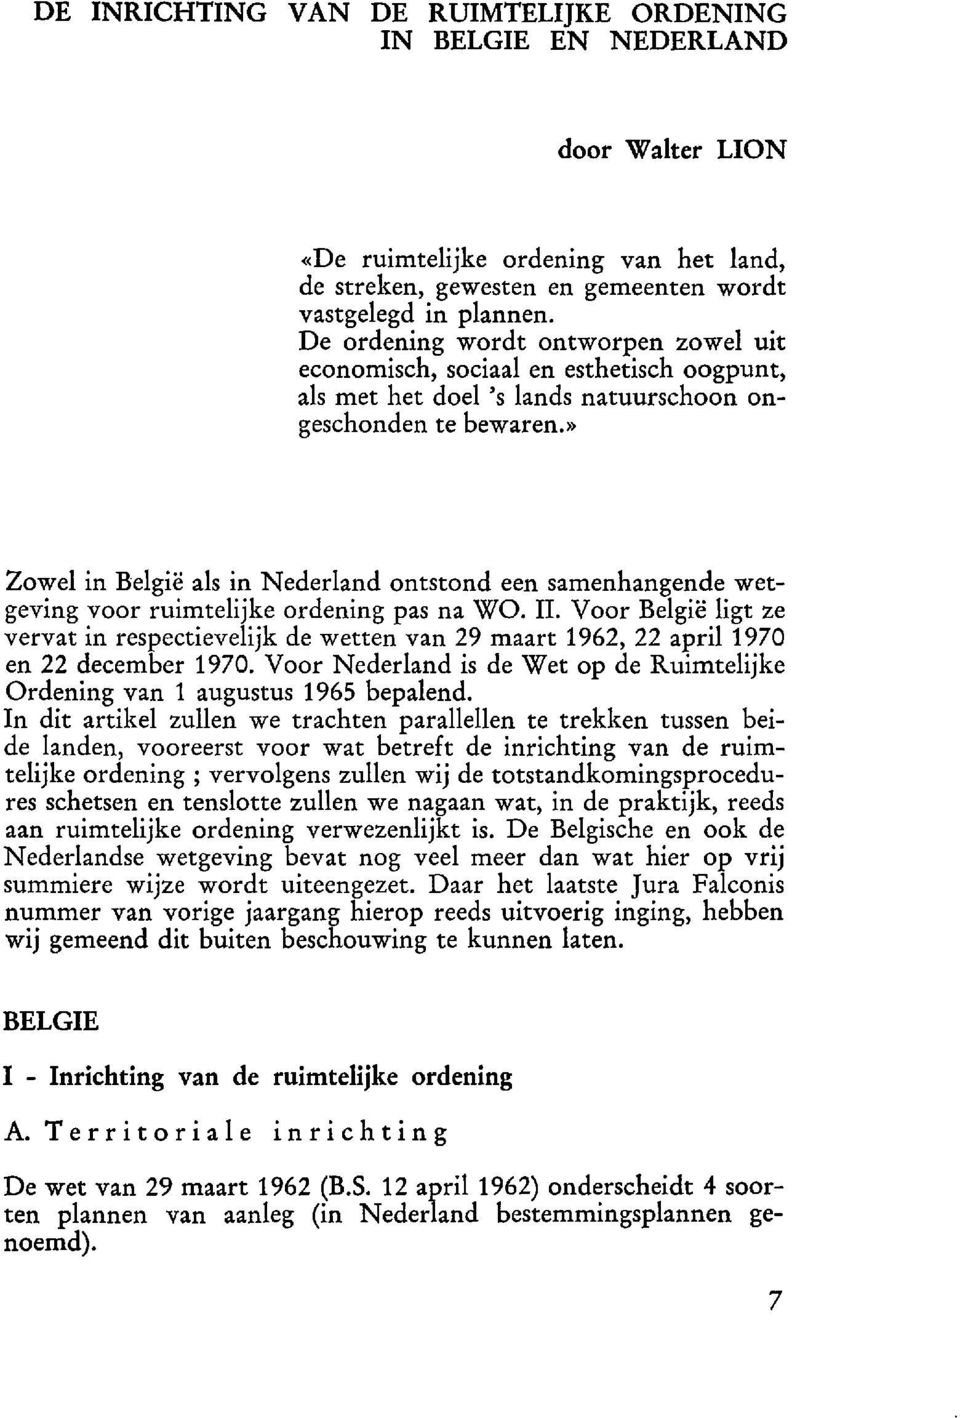 » Zowel in Belgic als in Nederland ontstond een samenhangende wetgeving voor ruimtelijke ordening pas na WO. II.